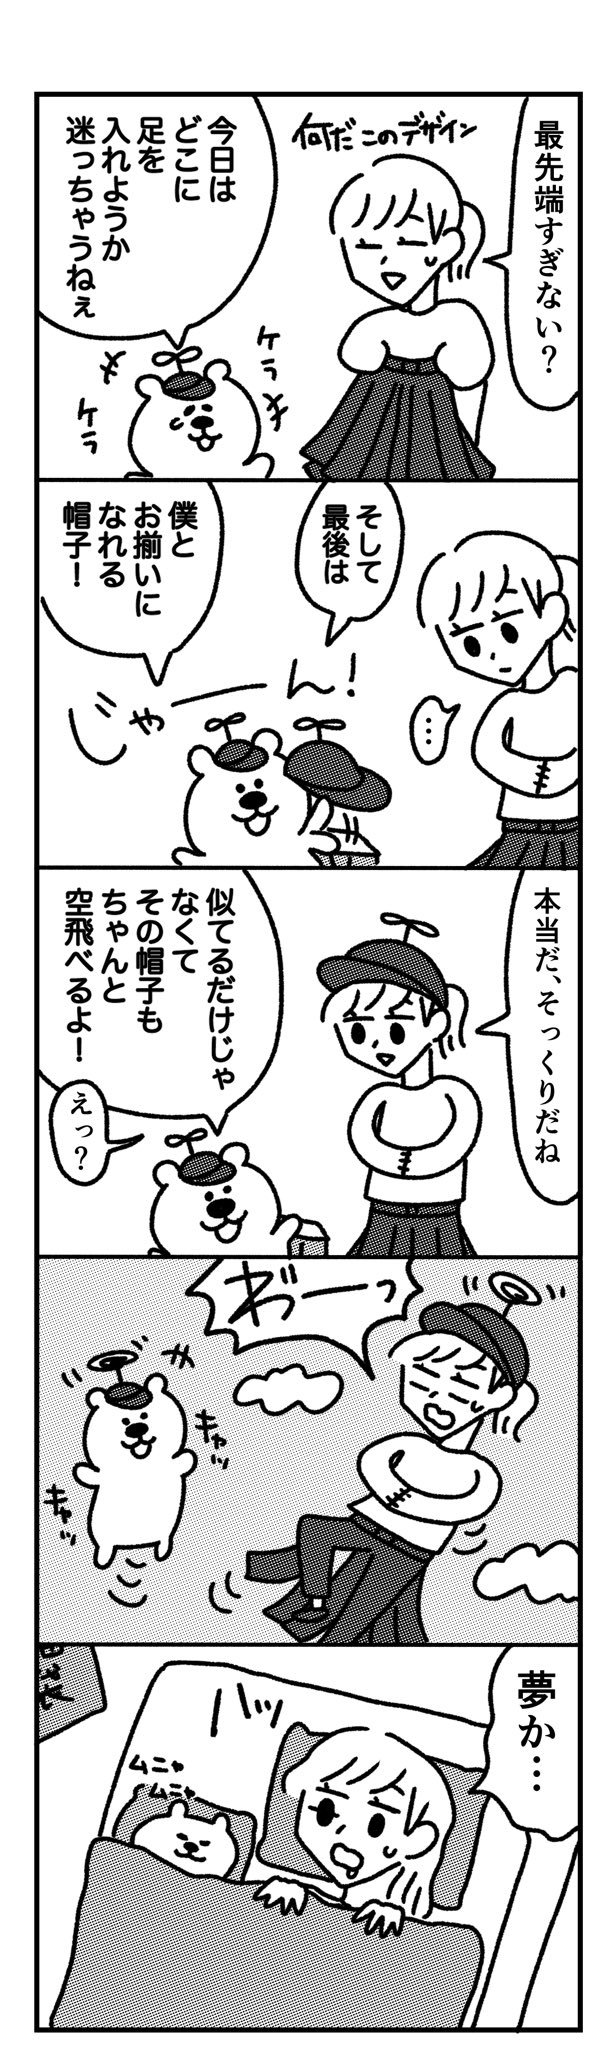 ポコの漫画「福袋」_f0346353_17252664.jpeg